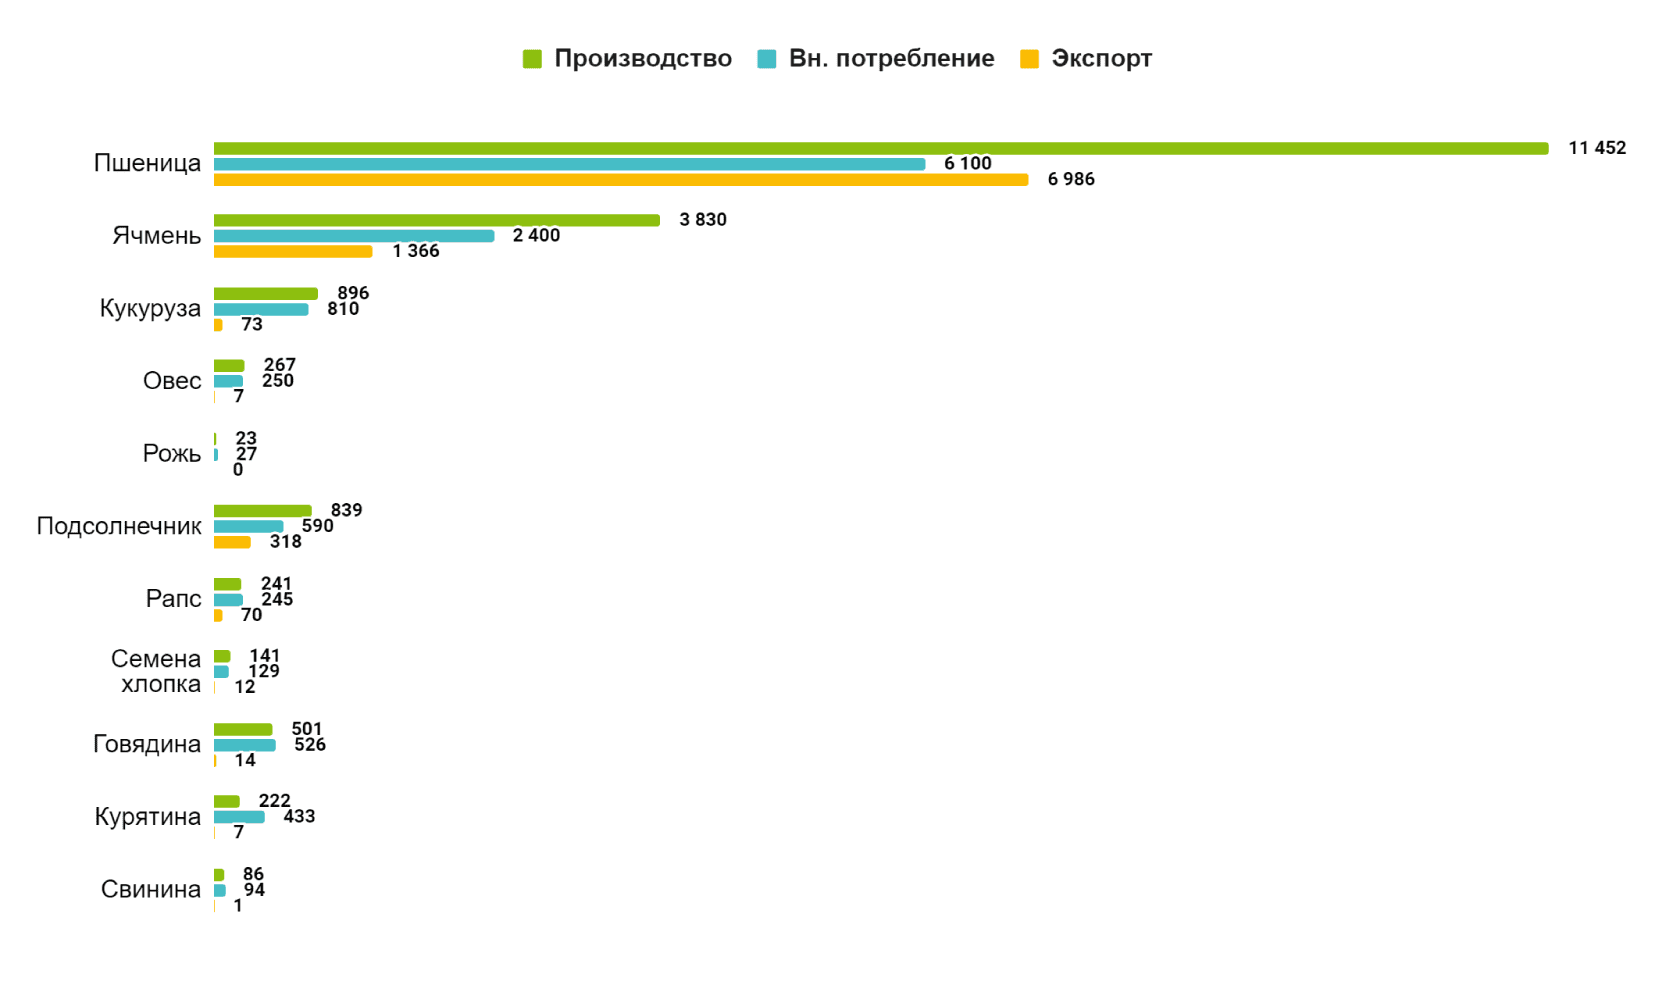 Казахстан, балансы производства и потребления, тыс. т